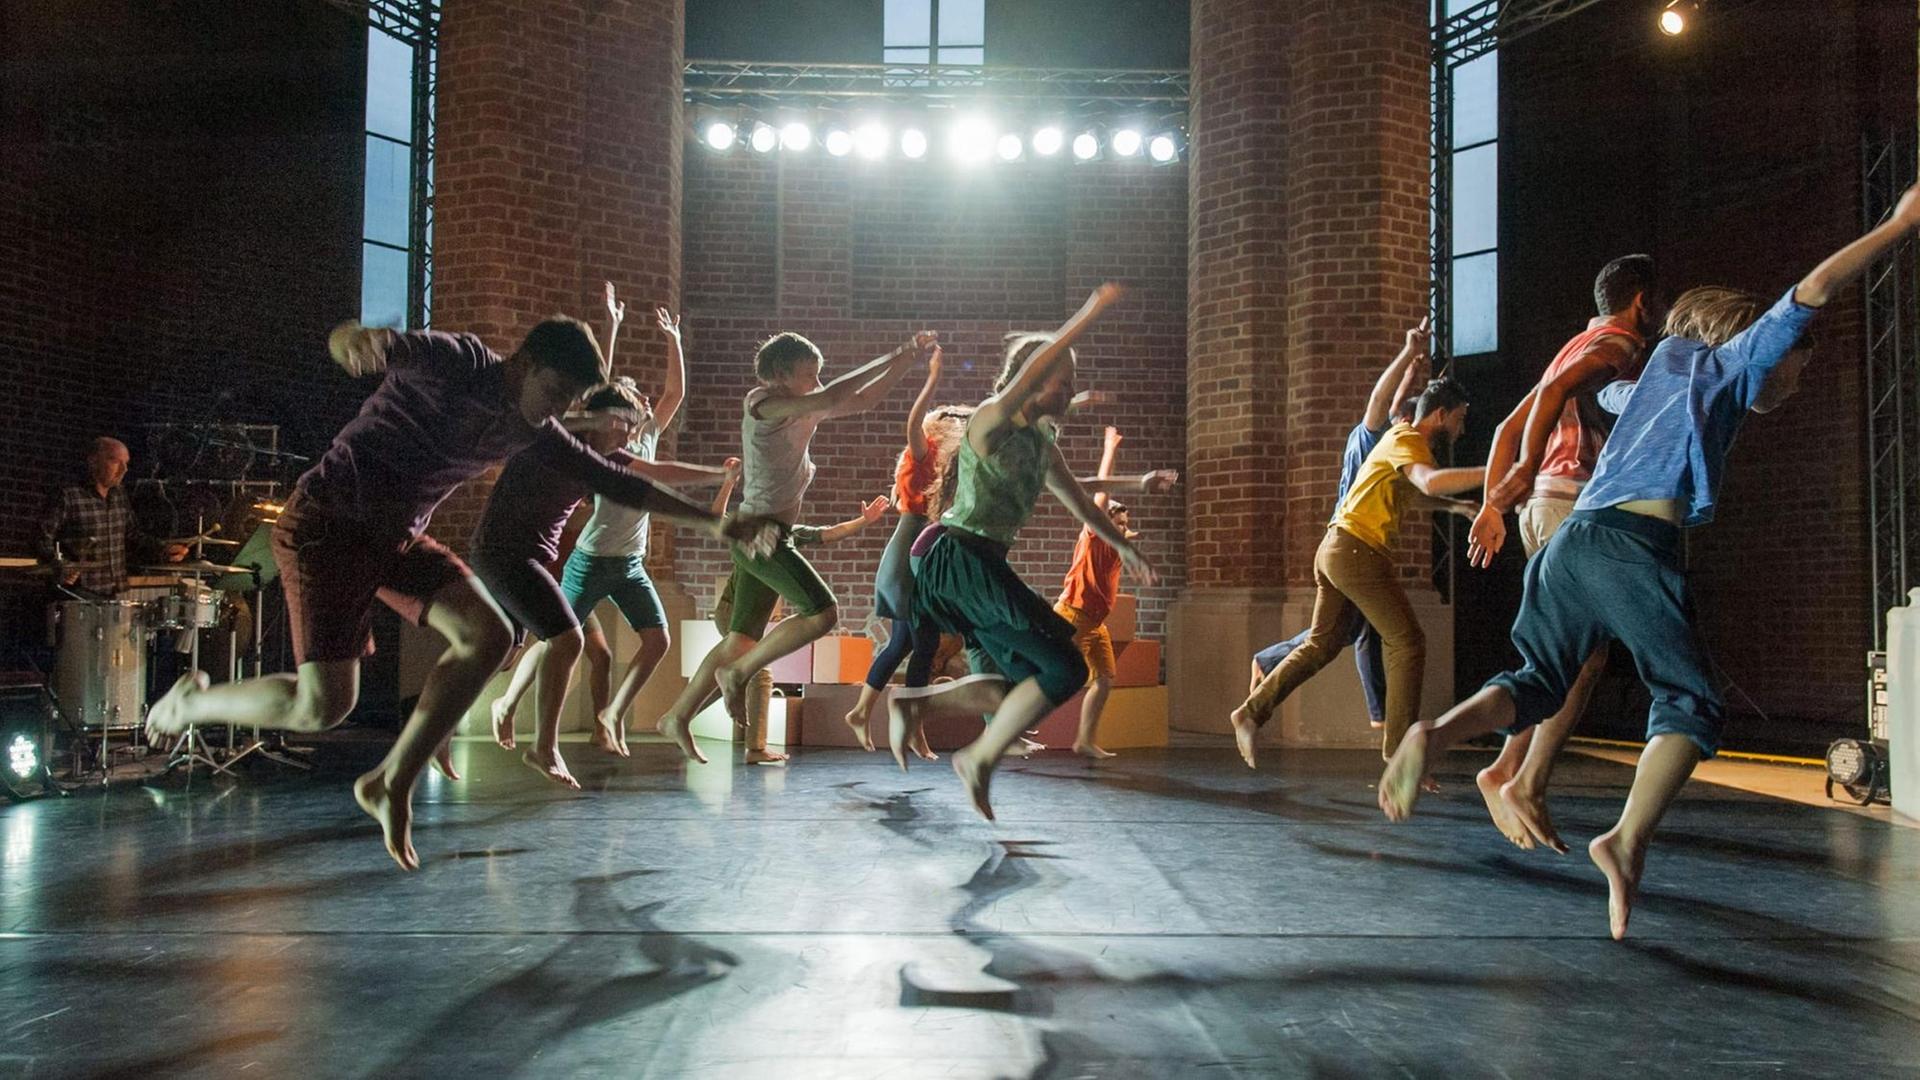 Szene aus "Das Fremde - so nah" am Anhaltischen Theater in Dessau. Die Darsteller springen bei einer Tanzperformance gleichzeitig in die Luft.